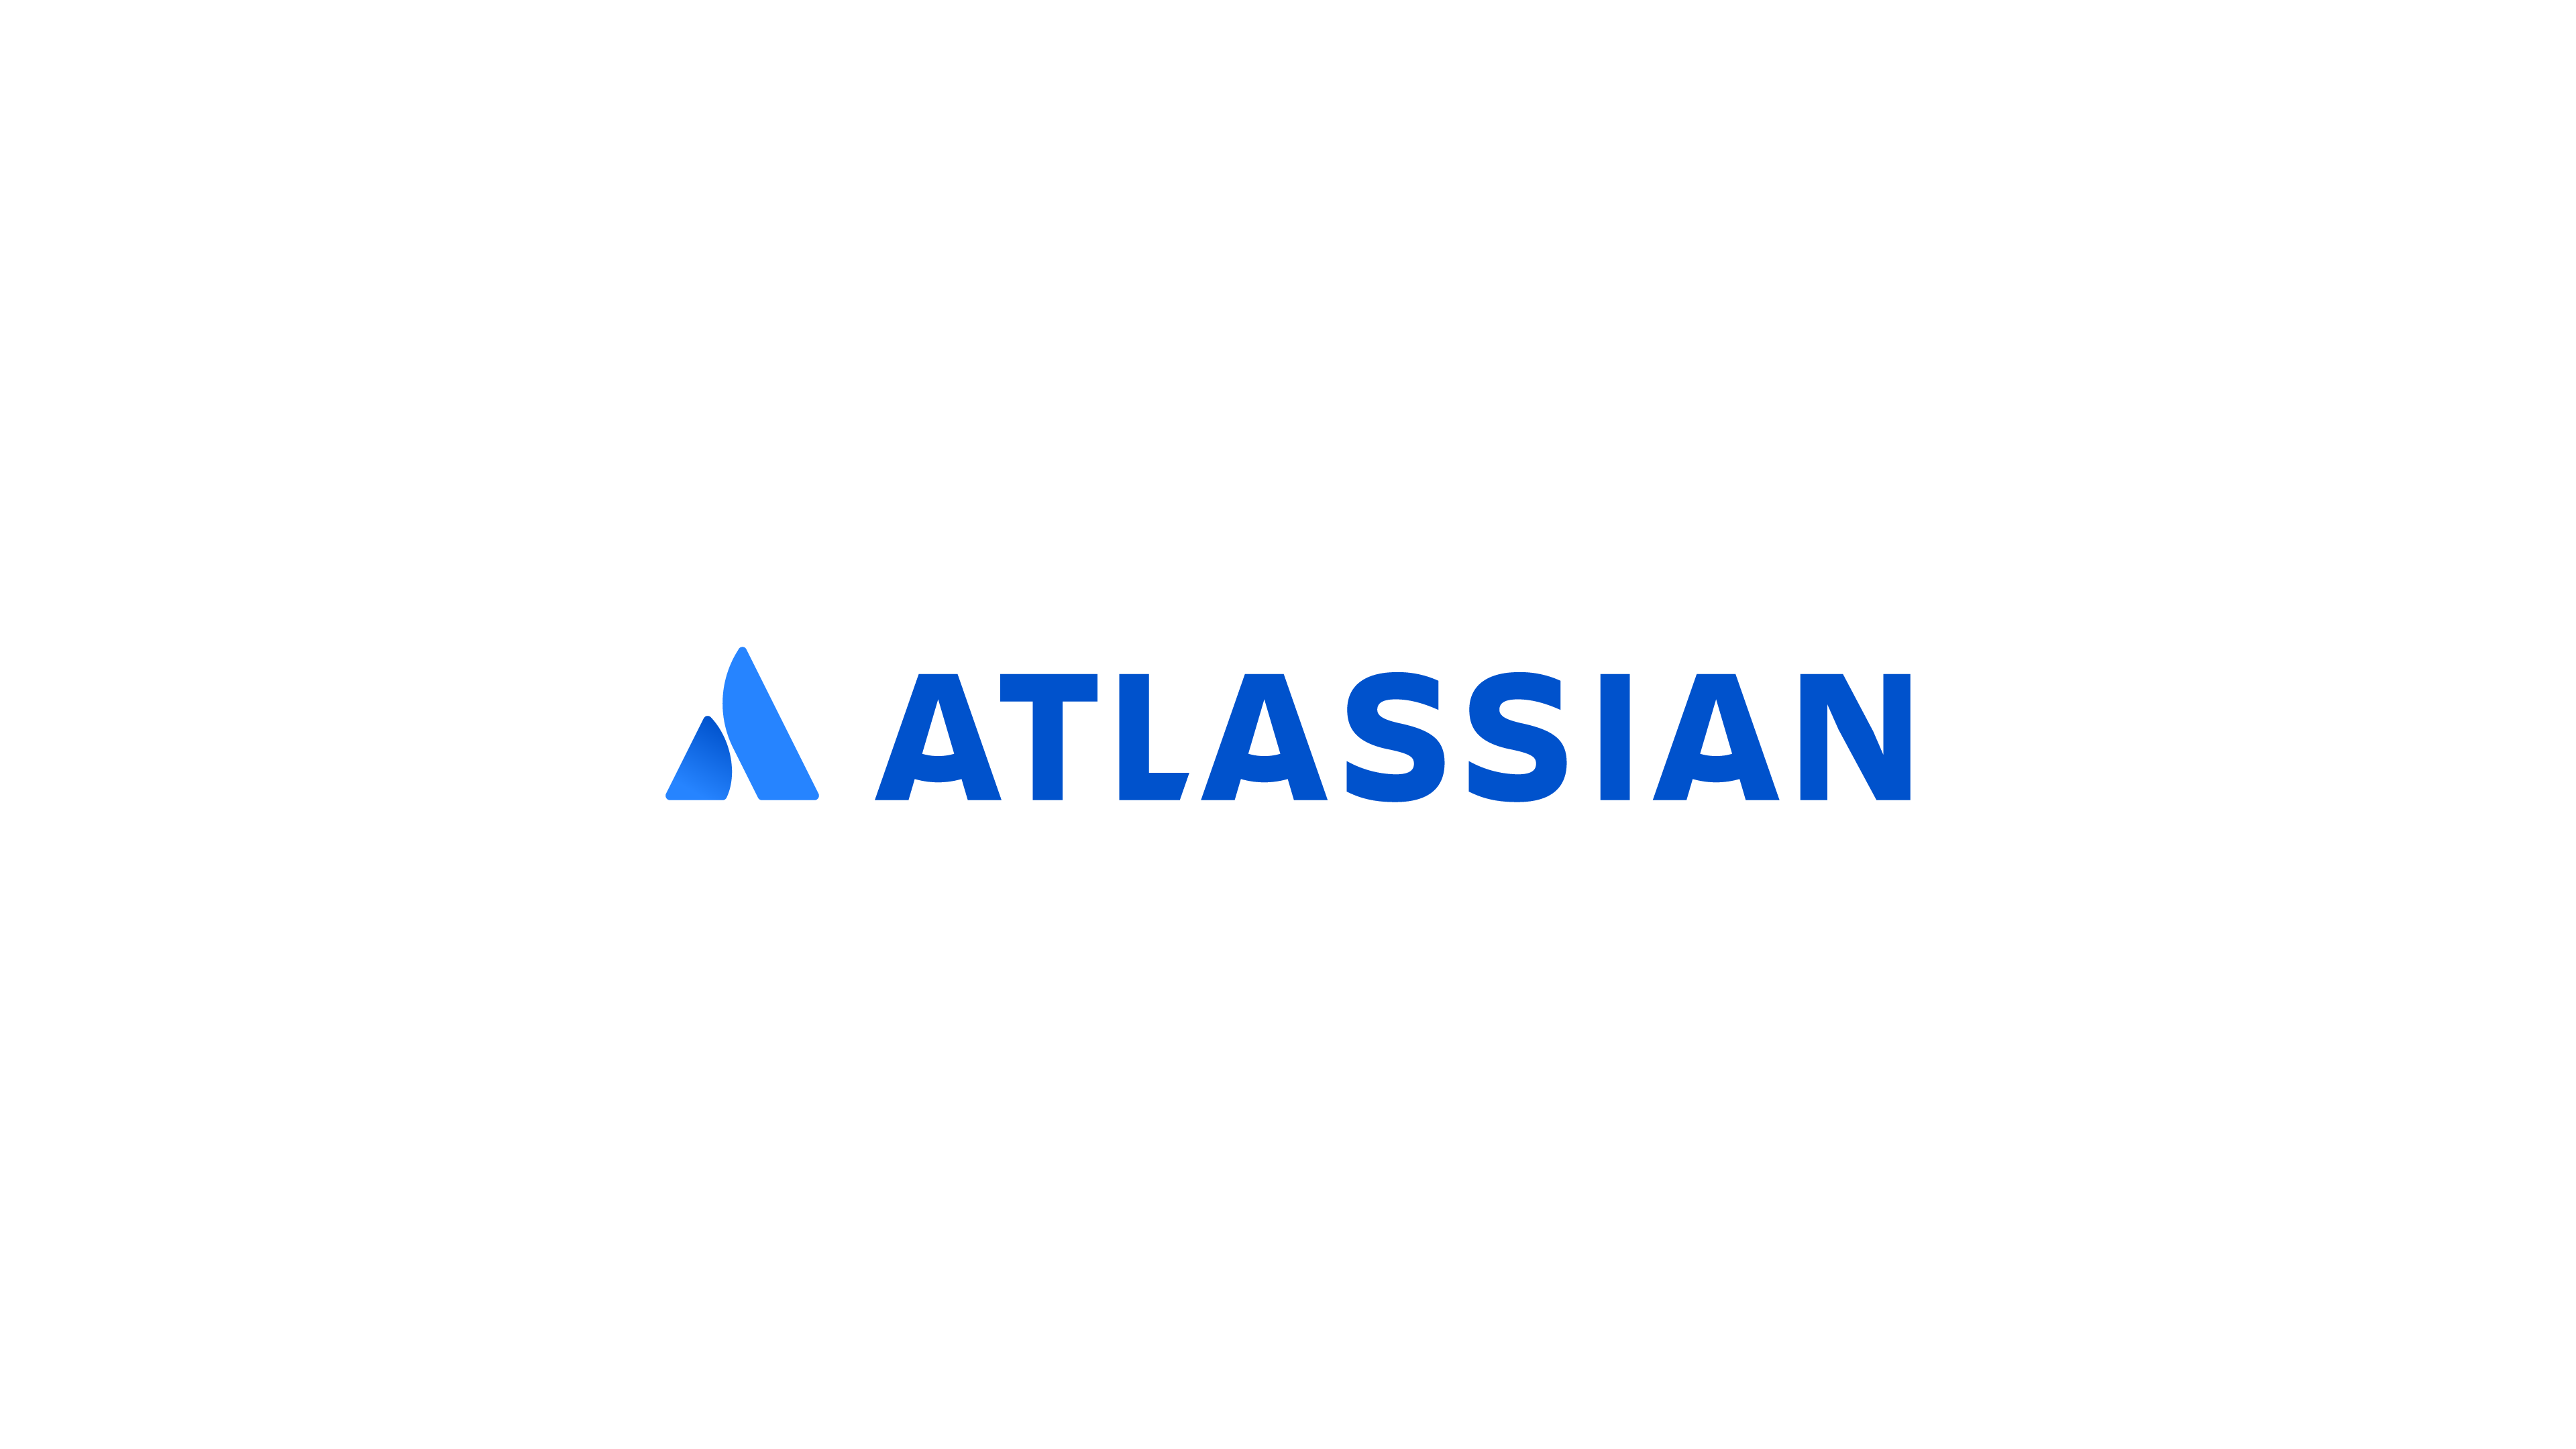 Atlassian blue logo